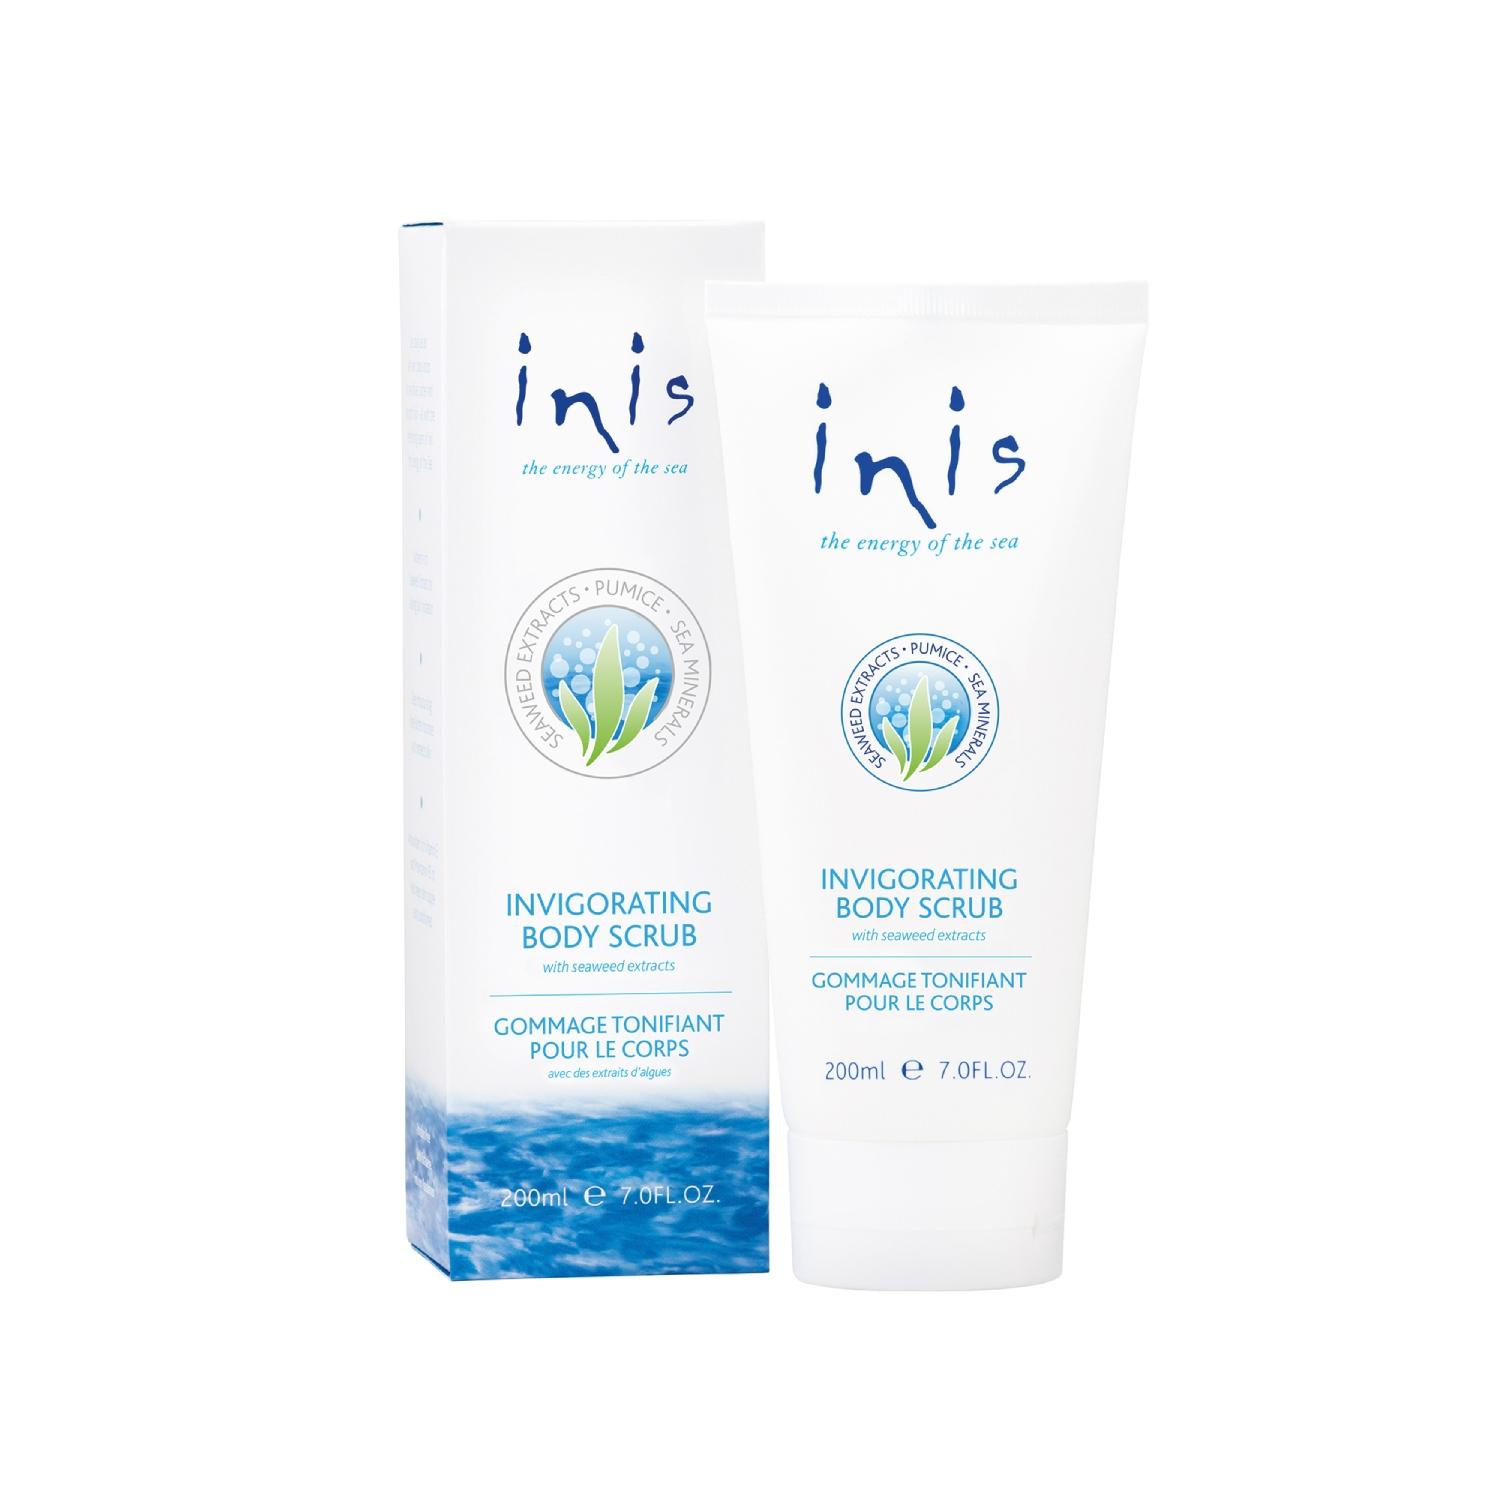 Inis Invigorating Body Scrub by fragrances of ireland